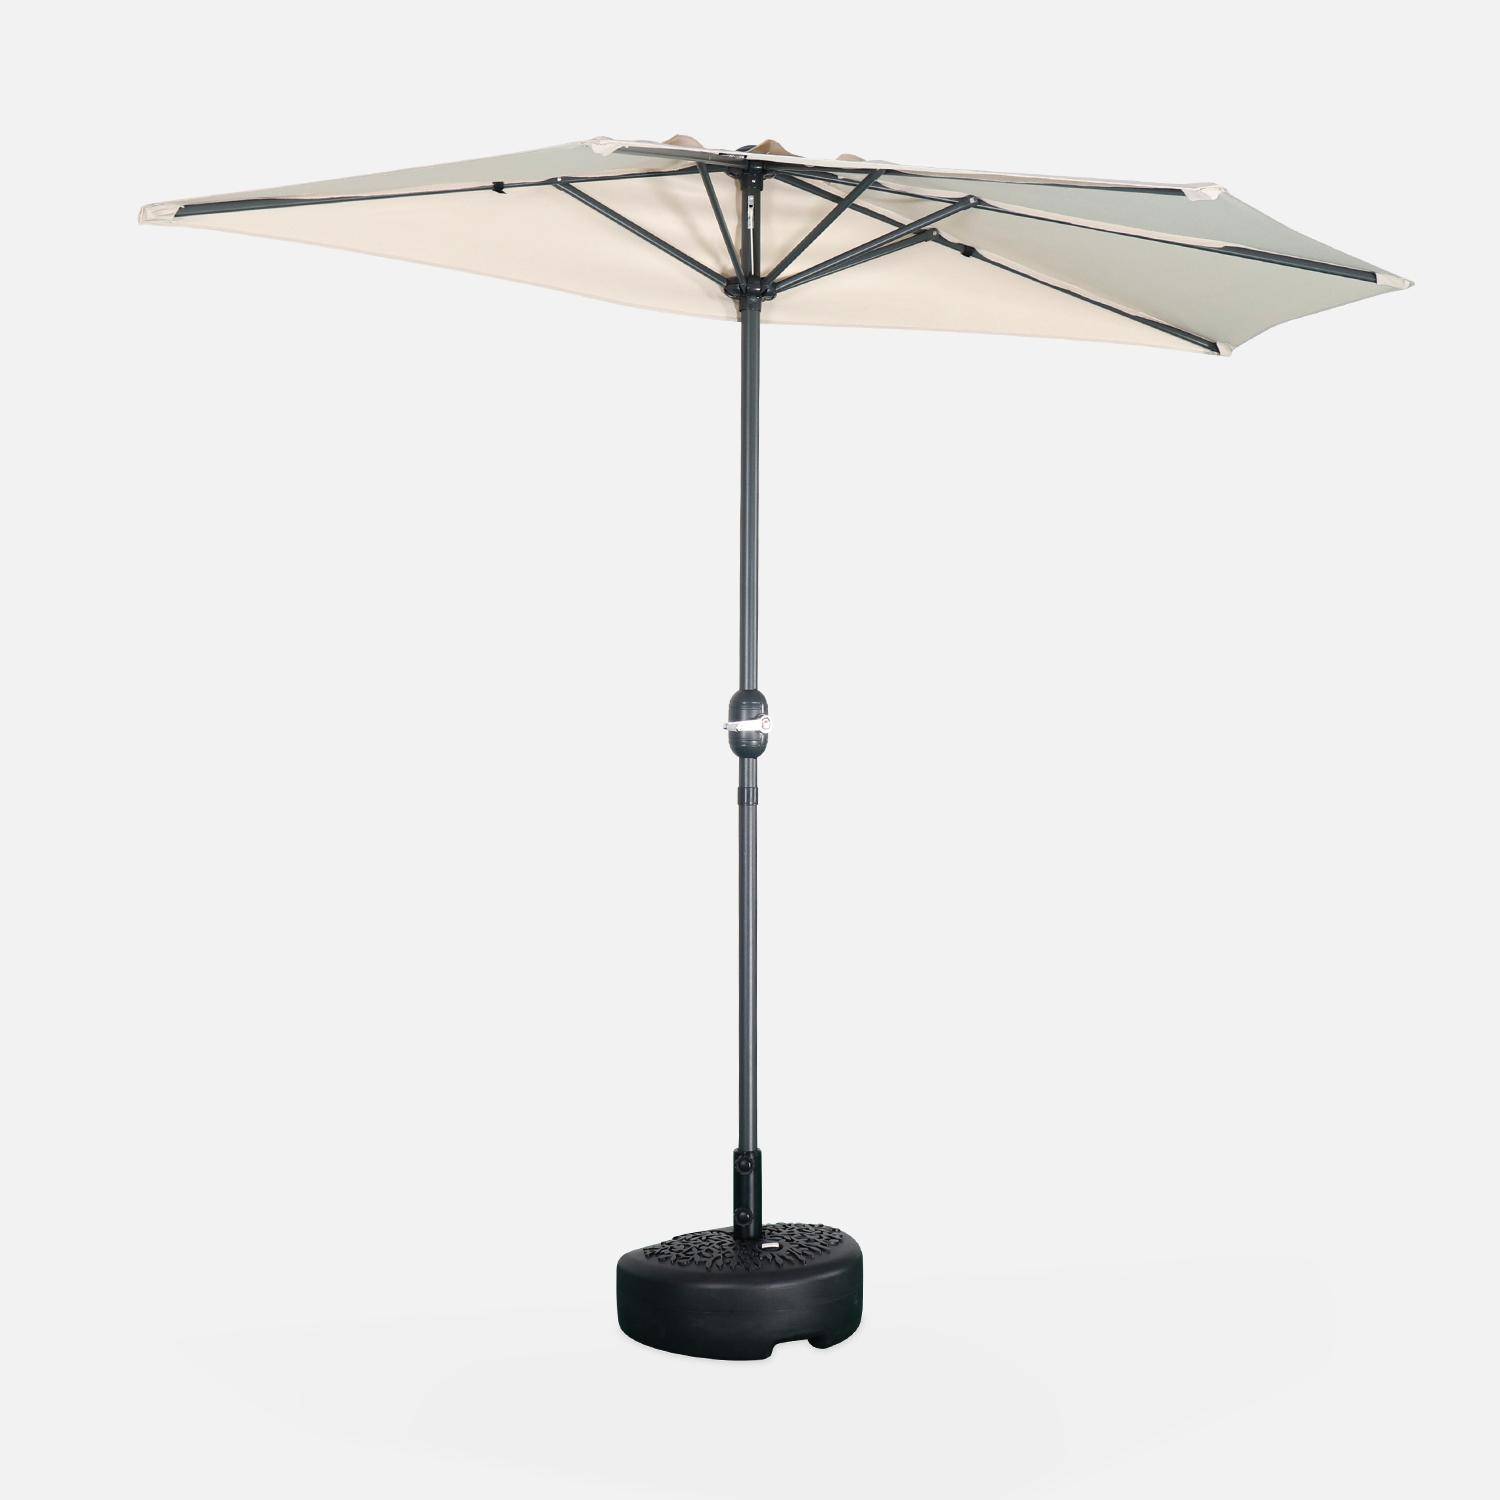  Parasol de balcon Ø250cm  – CALVI – Demi-parasol droit, mât en aluminium avec manivelle d’ouverture, toile sable Photo2